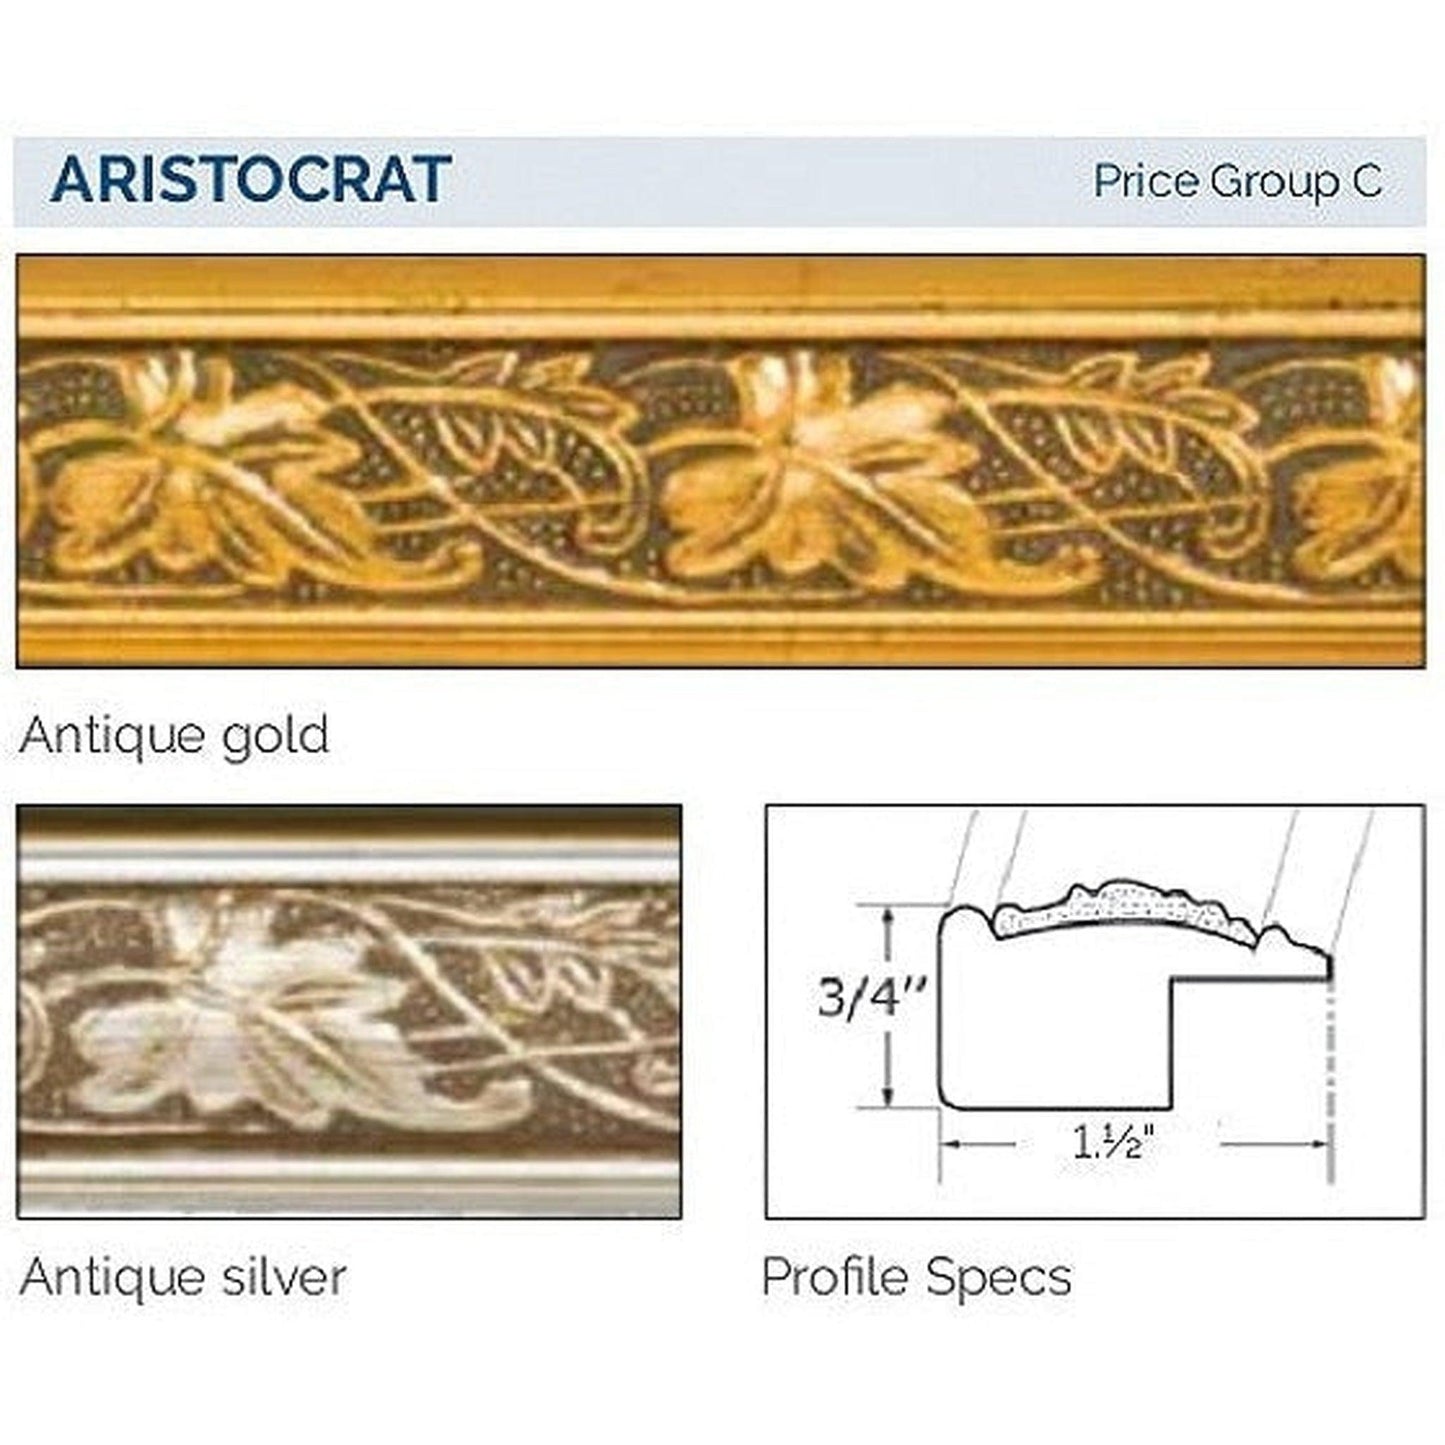 Afina Signature 20" x 30" Aristocrat Antique Gold Recessed Reversible Hinged Single Door Medicine Cabinet With Beveled Edge Mirror